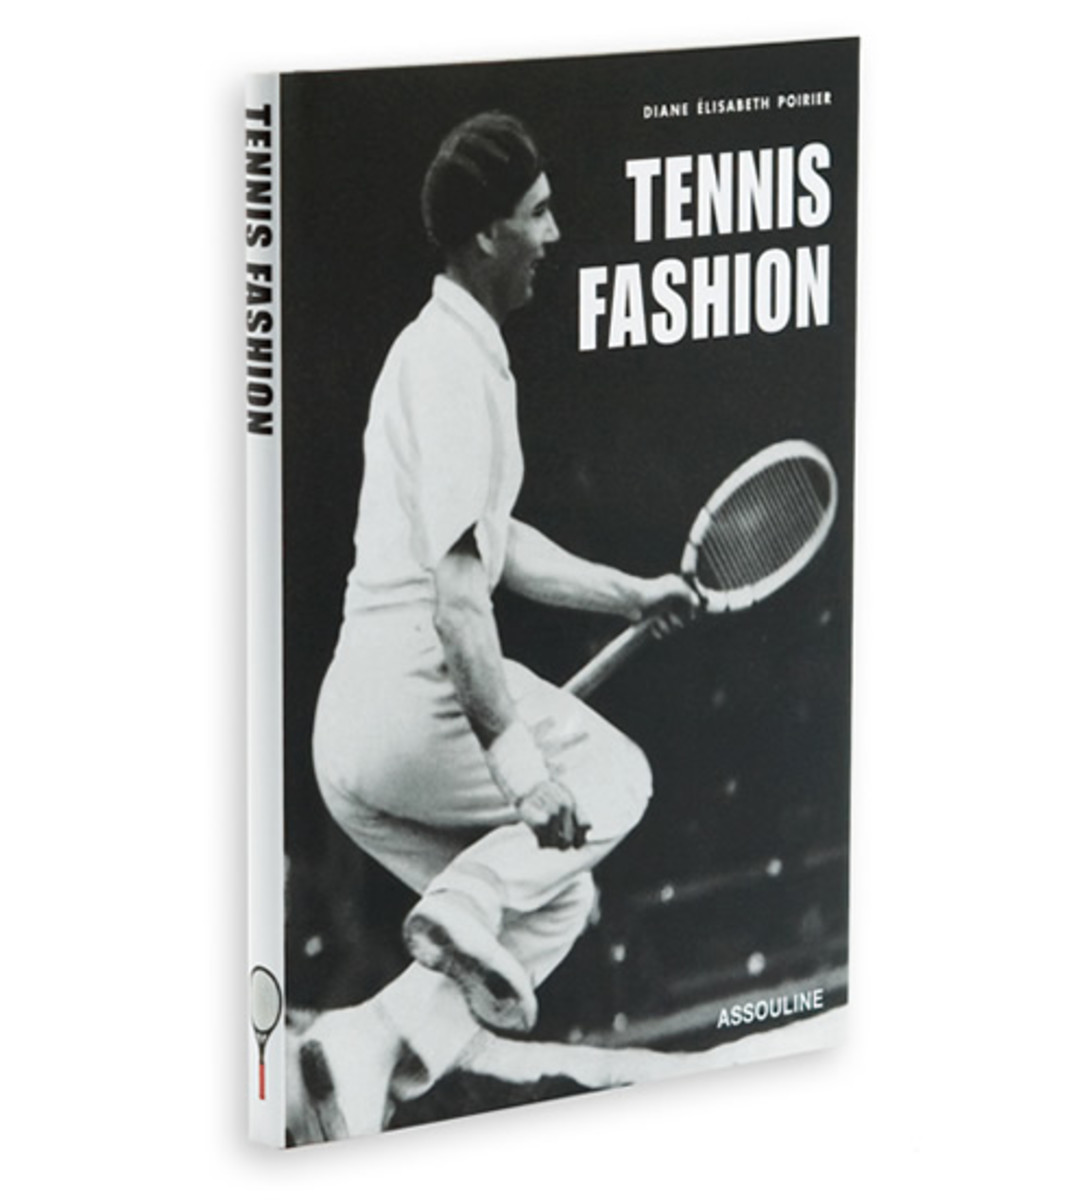 Tennis Fashion Acquire